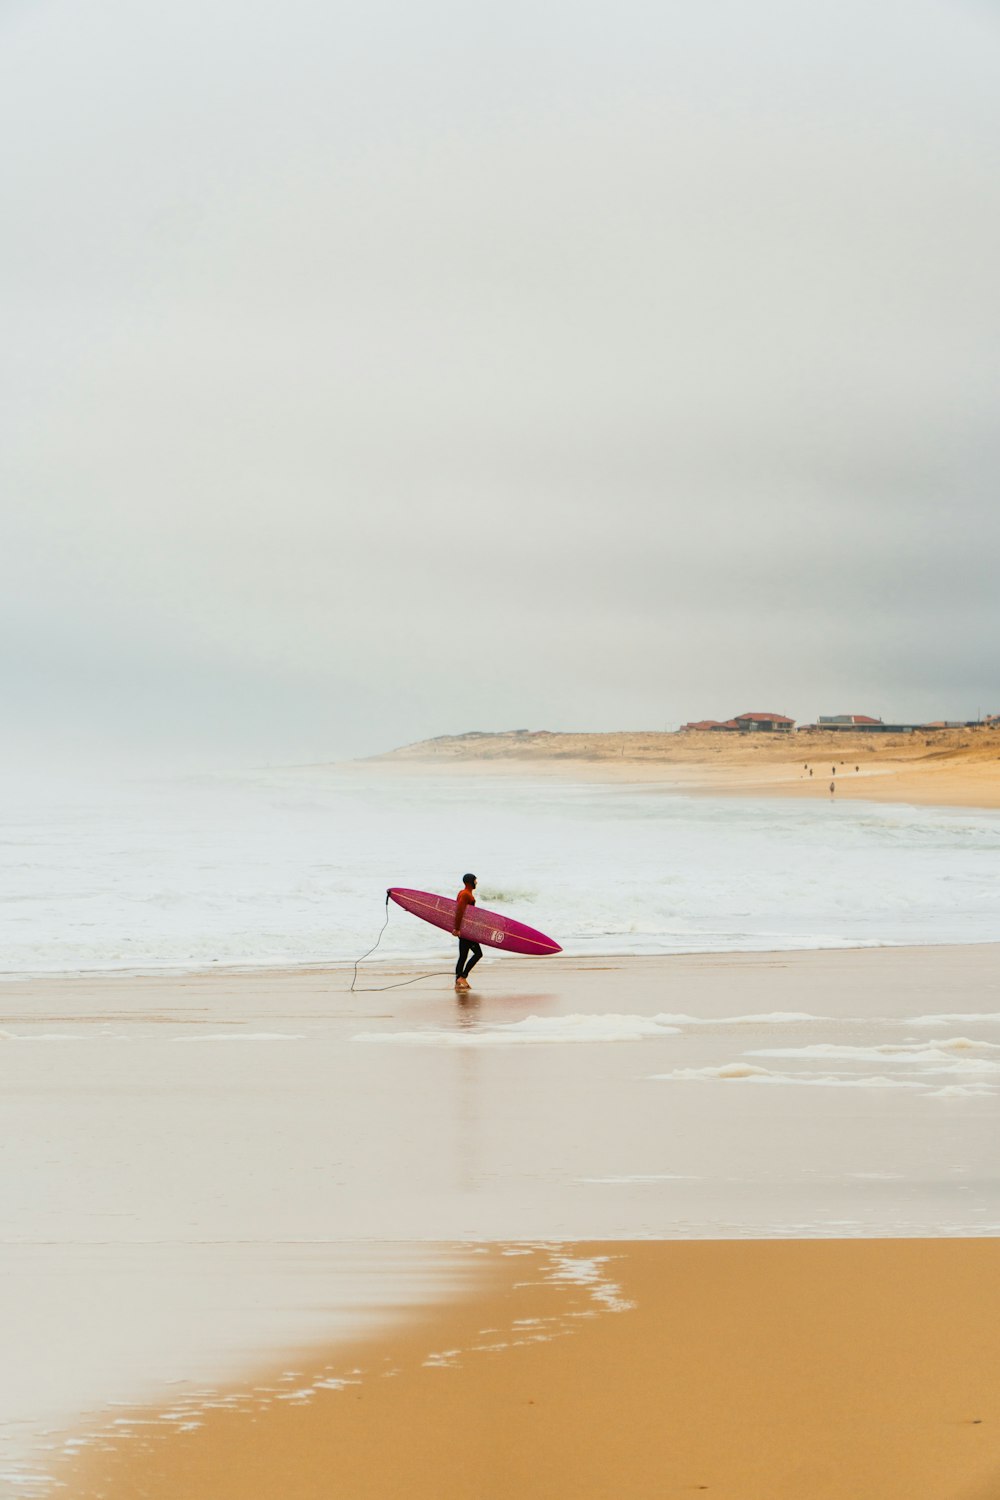 a man carrying a surfboard across a sandy beach